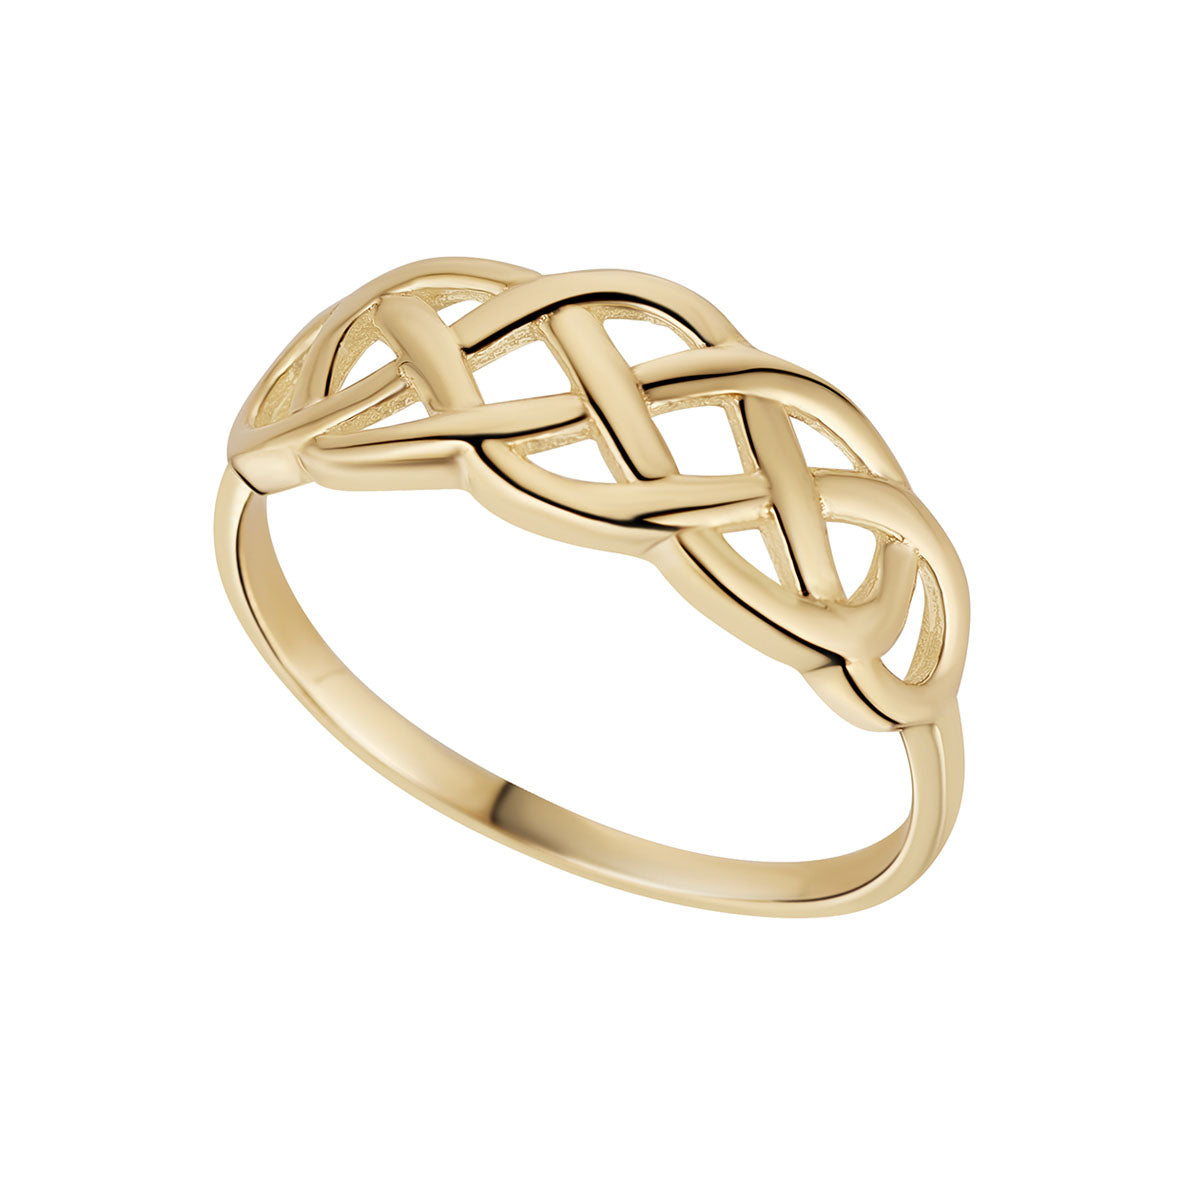 Stock image of Solvar 10k gold woven celtic knot ring s21143